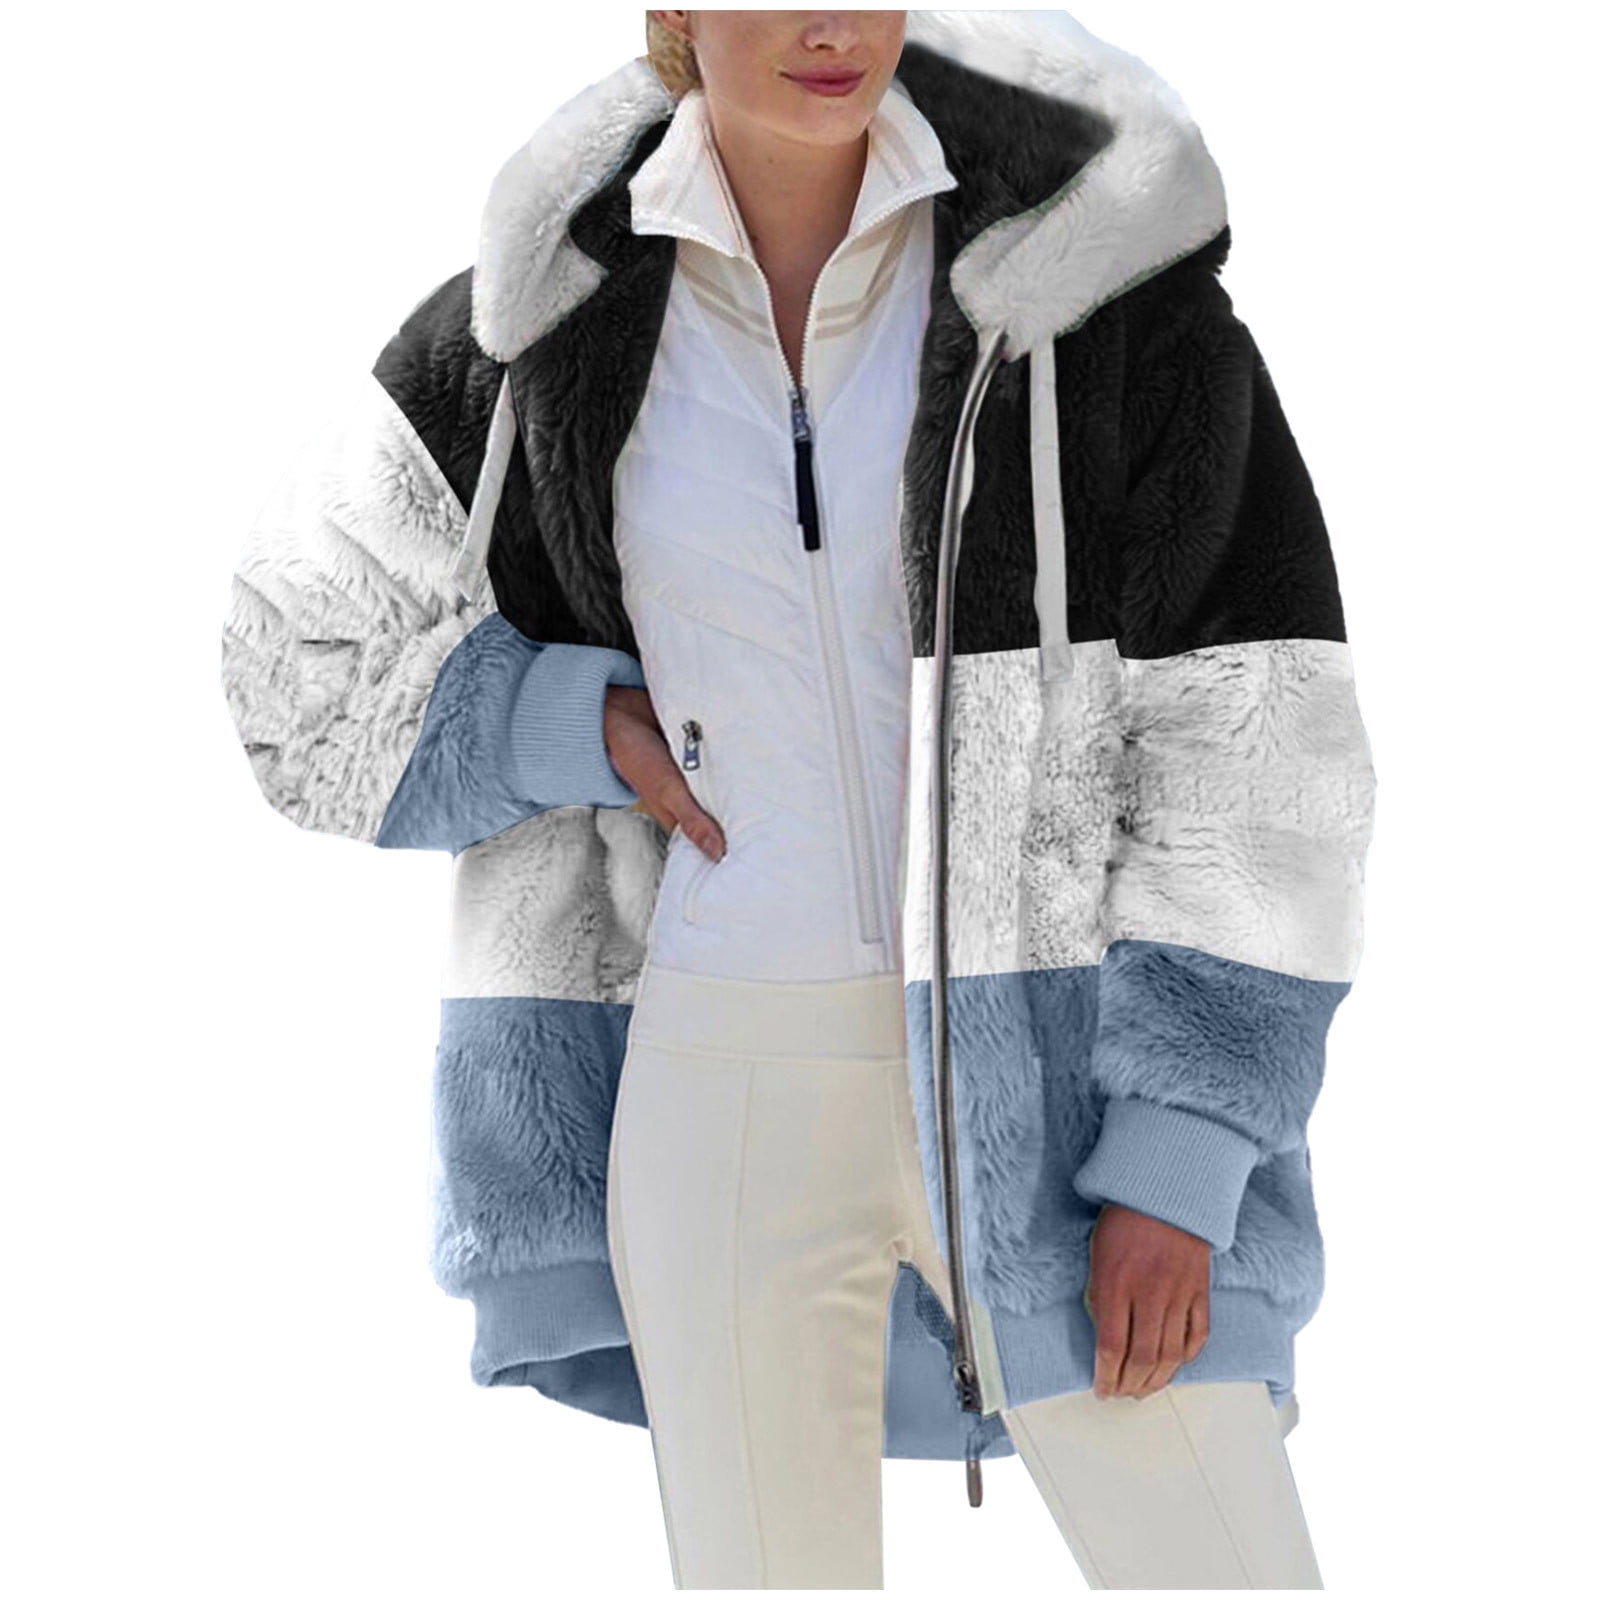 Scyoekwg Clearance Womens Winter Jacket Plus Size Womens Fashion Zipper ...